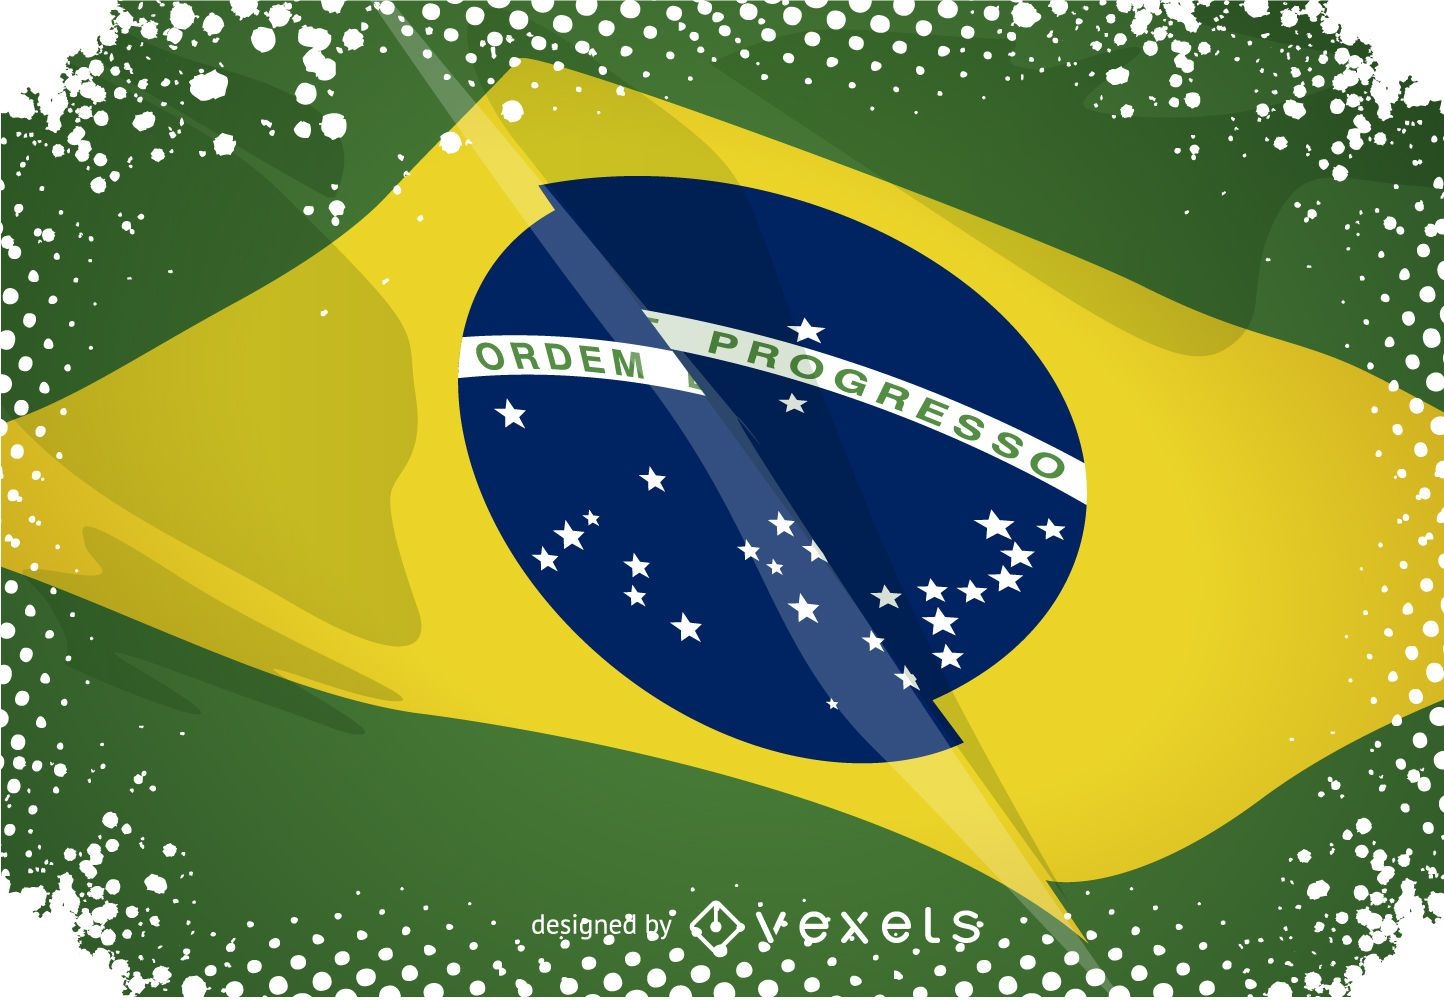 Origami-Poster mit brasilianischer Flagge